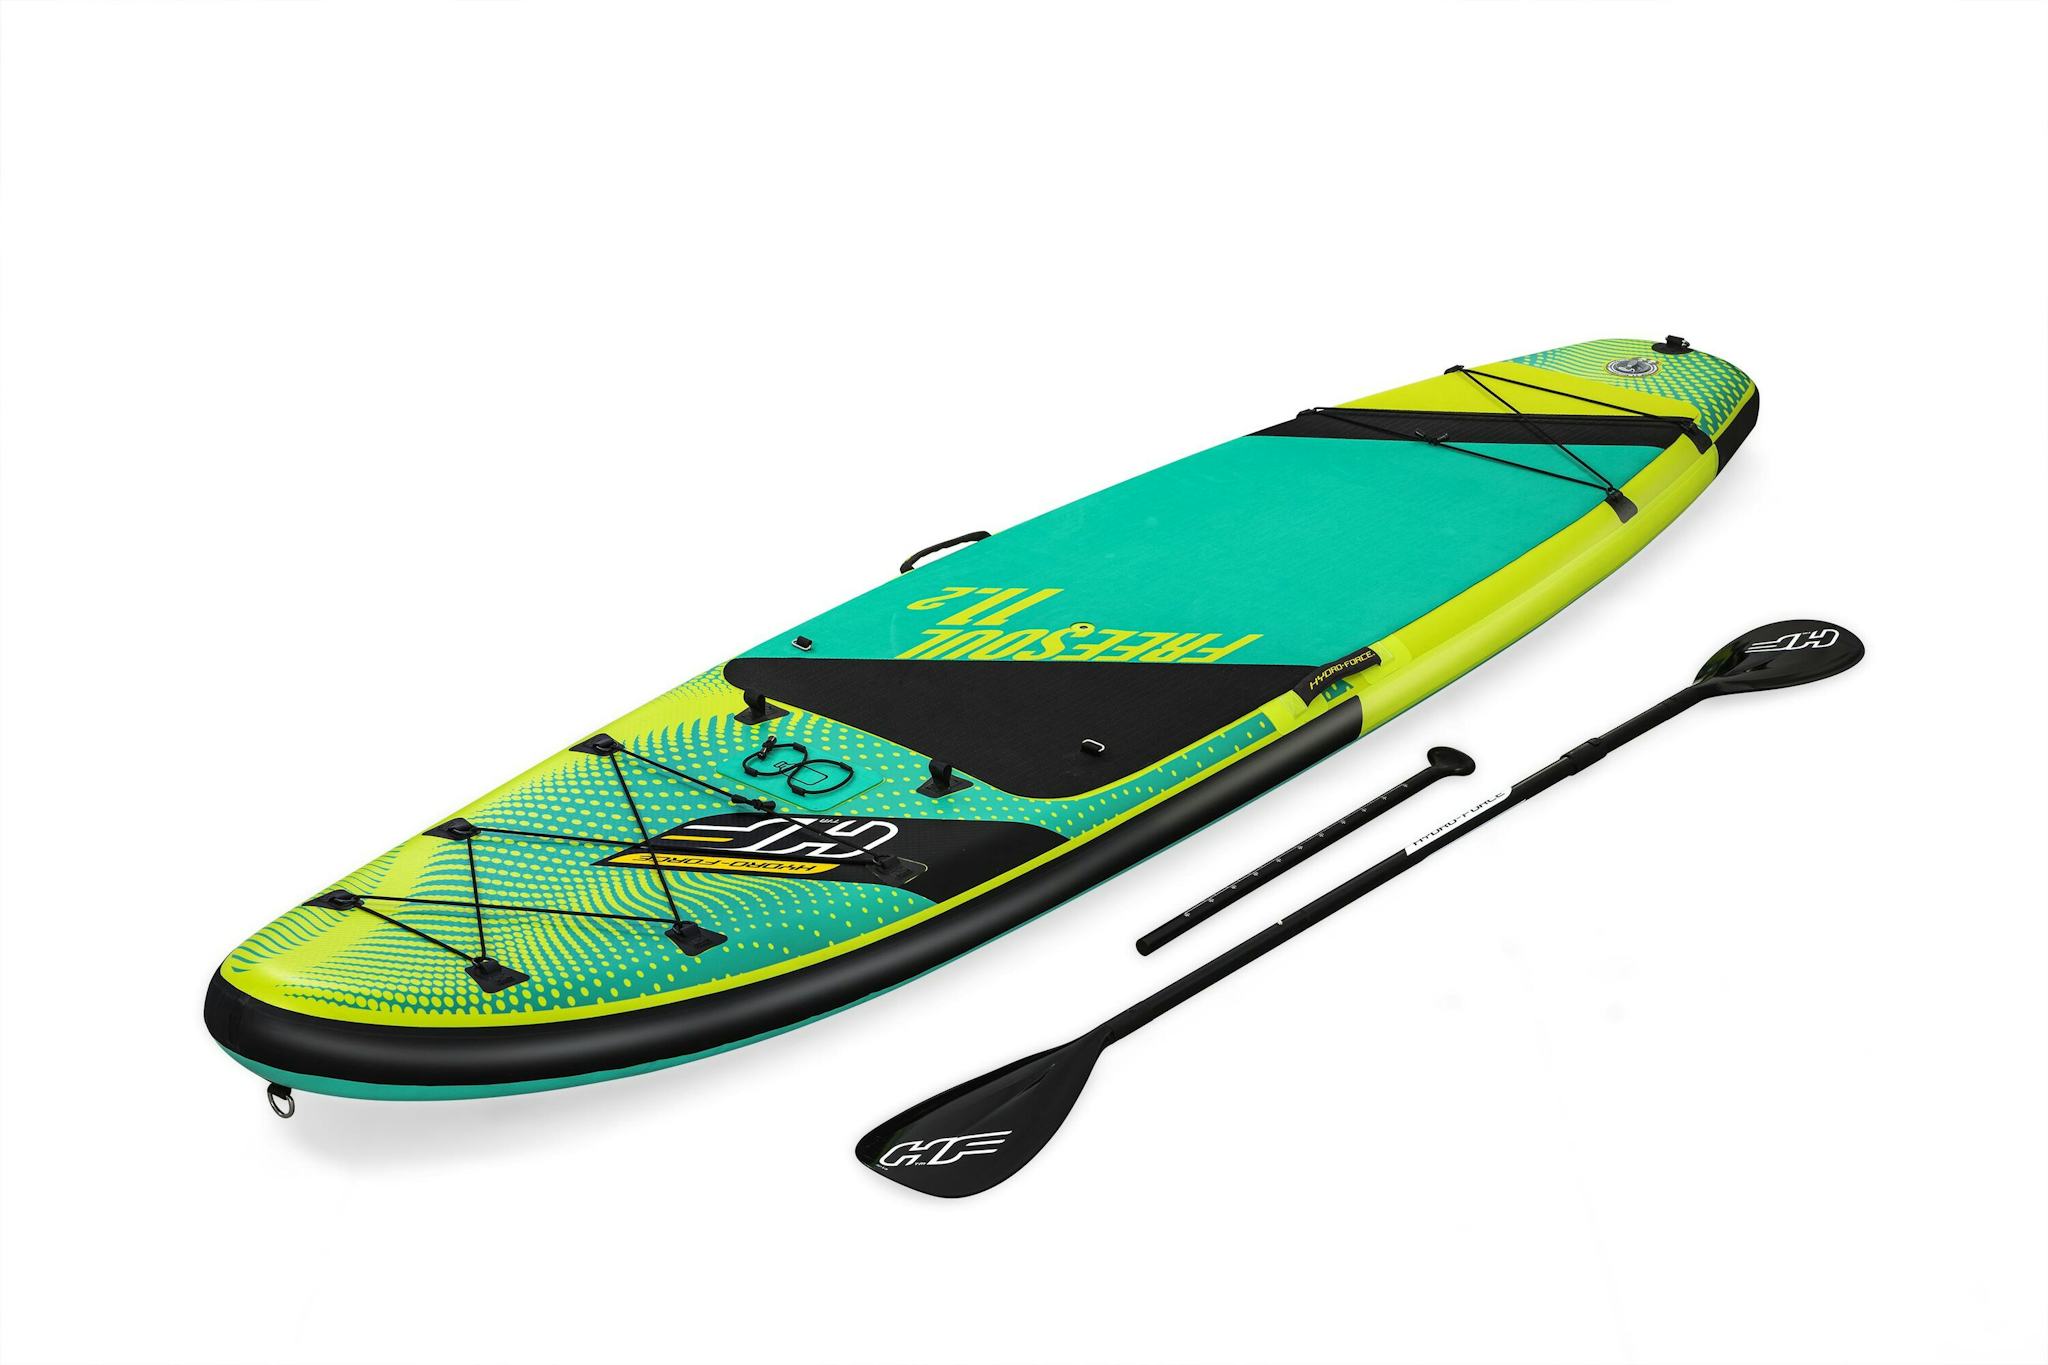 Sports d'eau Paddle SUP Freesoul Tech 340 x 89 x 15 cm transformable en kayak ou en planche à voile, avec siège, cale-pieds, pompe Bestway 3